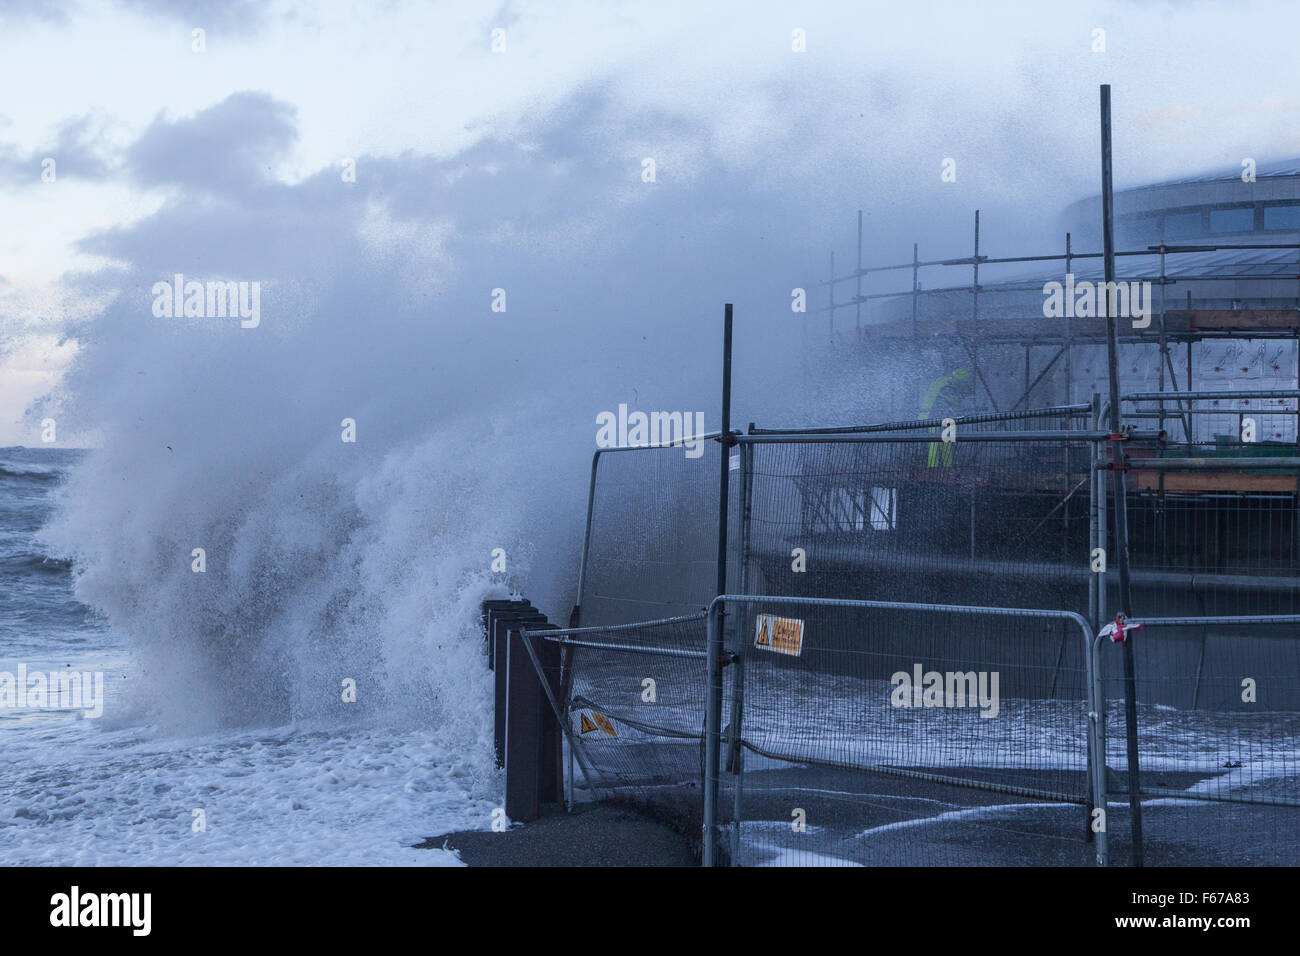 Aberystwyth, Pays de Galles, Royaume-Uni. 13 novembre 2015. Abigail lashes out tempête à Aberystwyth ce matin avec furious vagues tandis que deux constructeurs d'essayer de travailler sur l'échafaudage du nouveau kiosque sur la promenade. Crédit : Ian Jones/Alamy Live News Banque D'Images